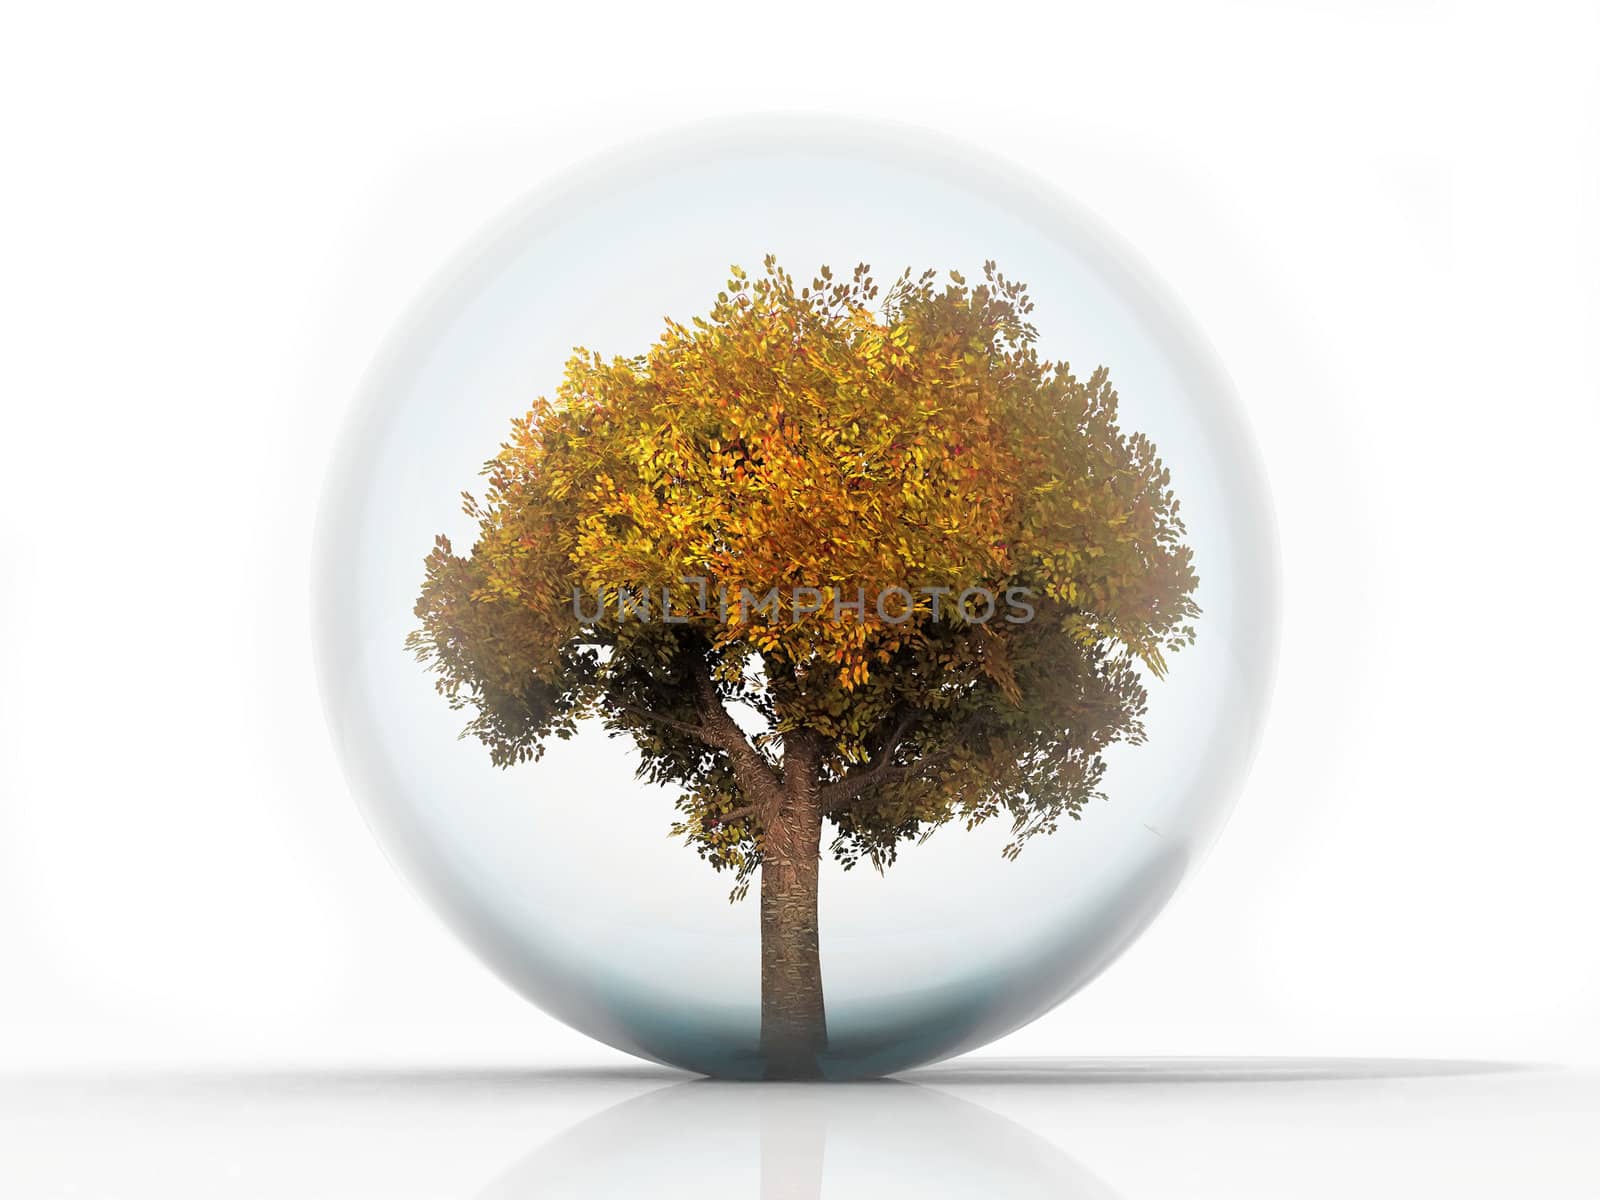 Autumn Tree in a bubble by njaj